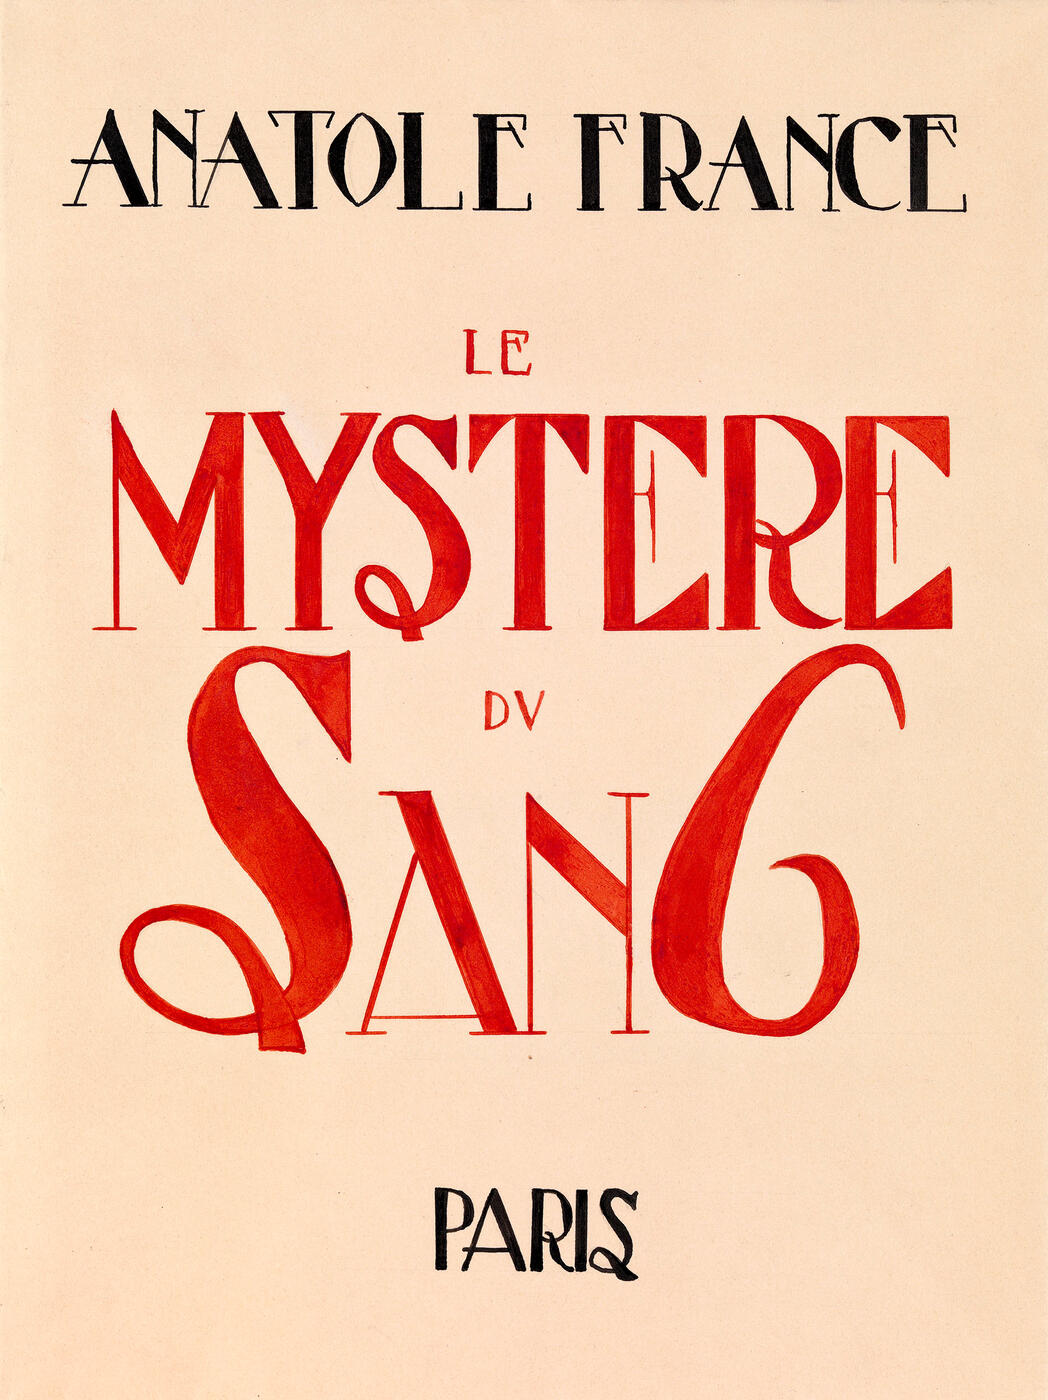 Autograph Illustrated Manuscript of Anatole France's "Le Mystère du Sang"